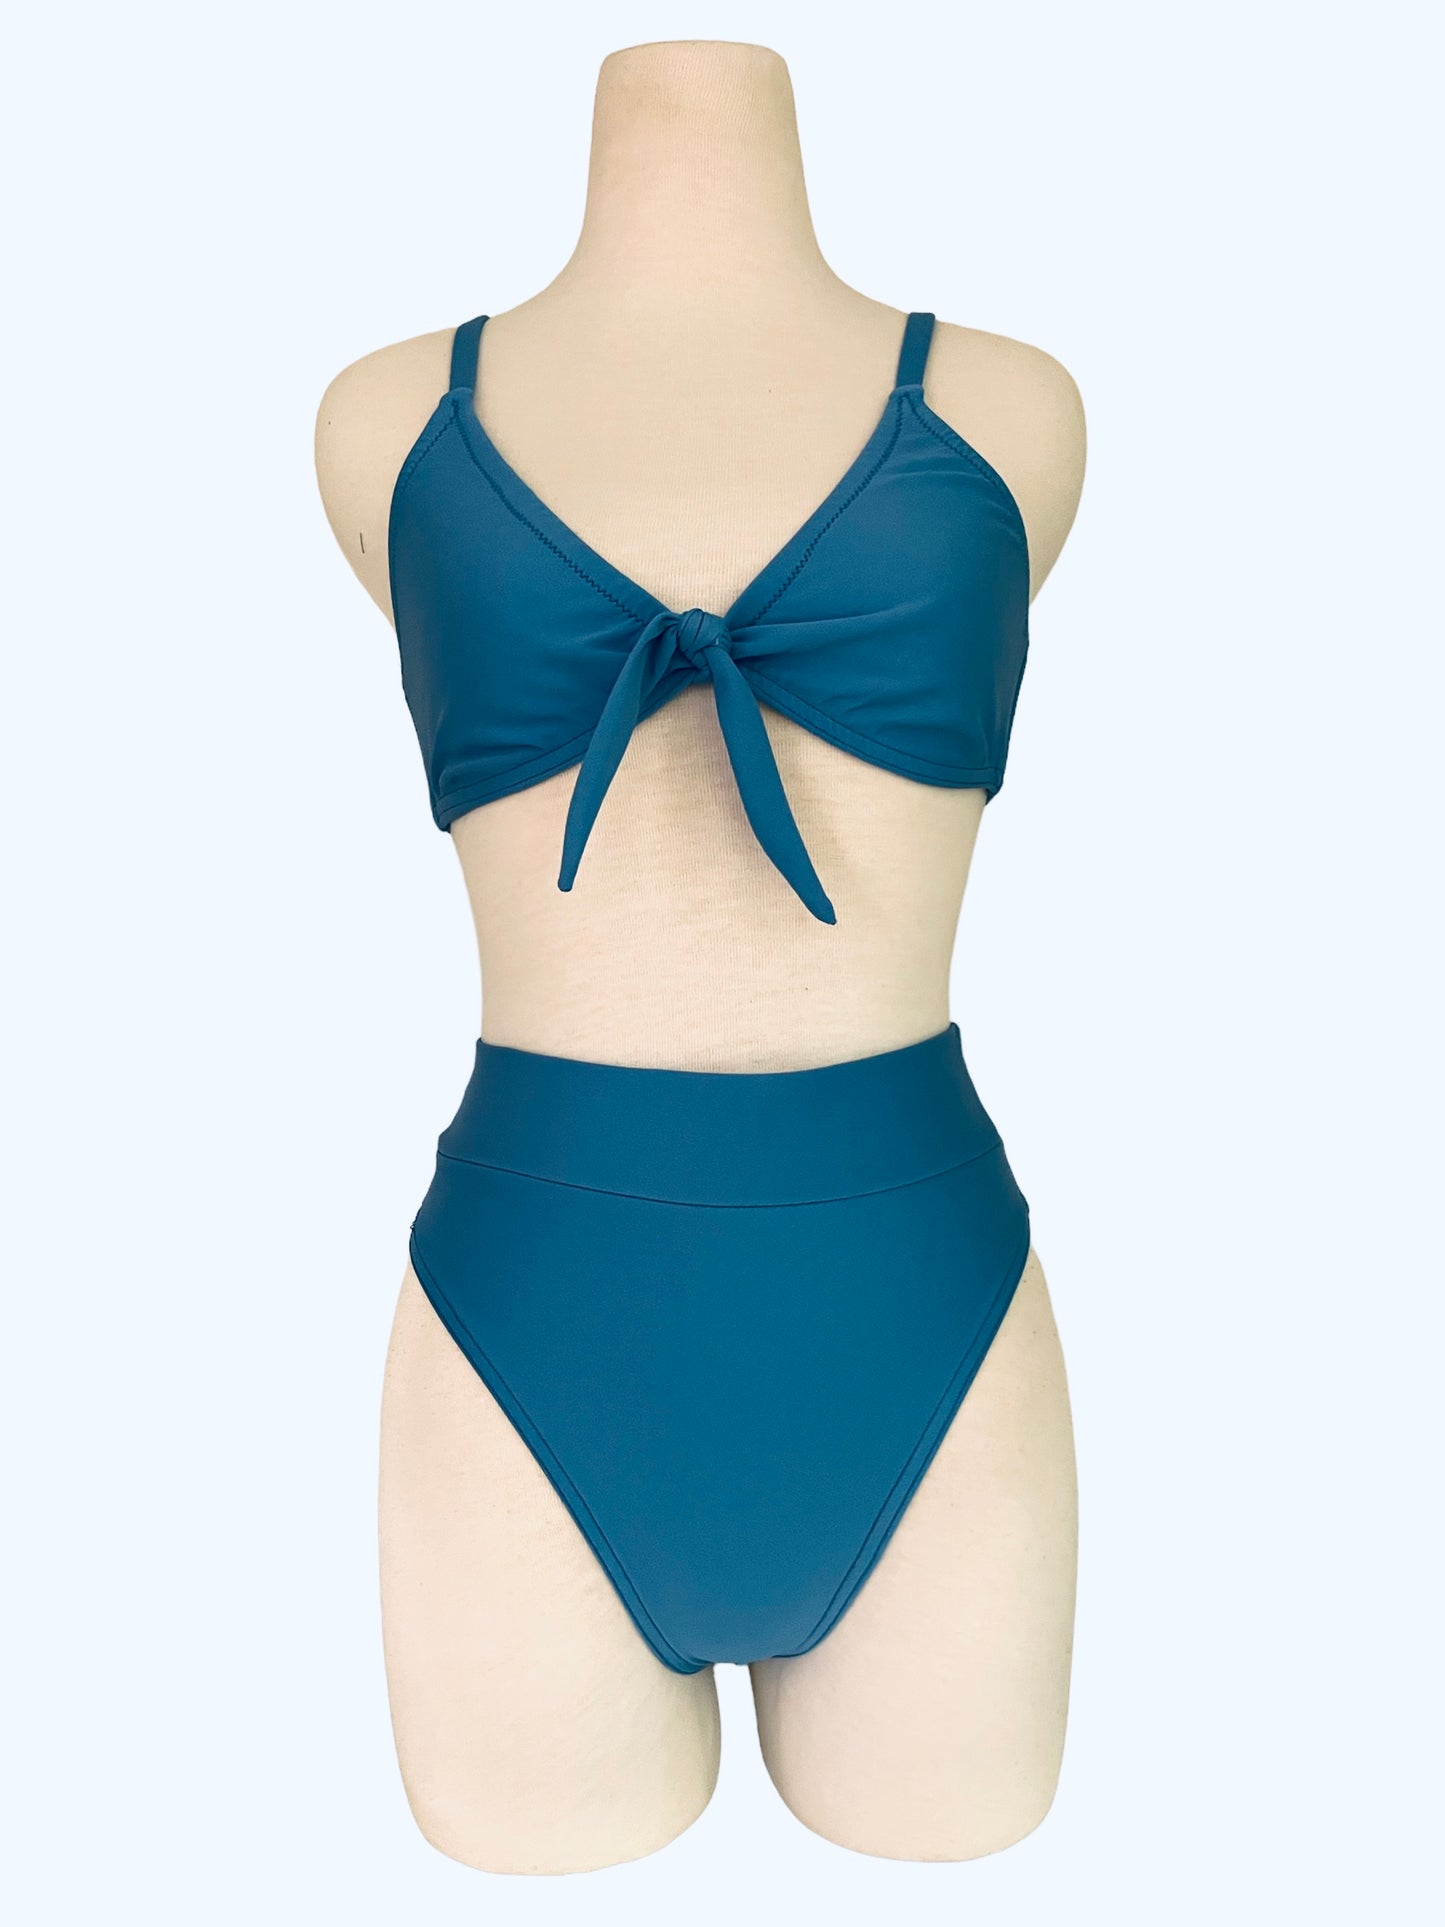 Blue Belle bra top and high cut waistband bottom